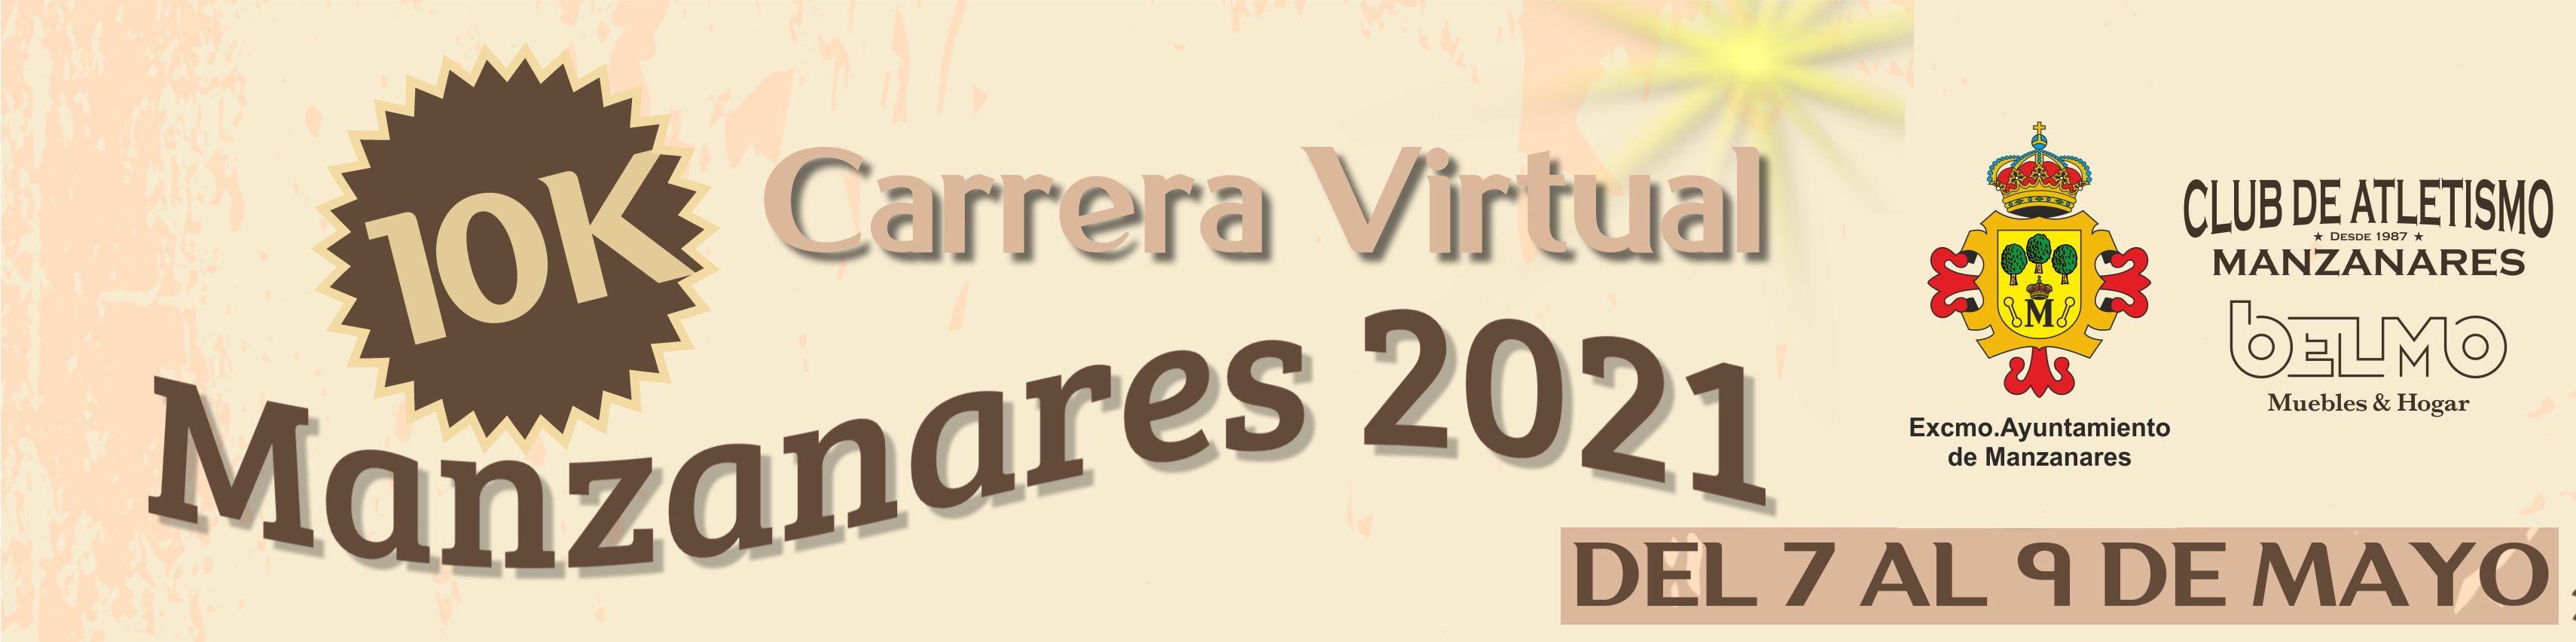 10K Carrera Virtual Manzanares